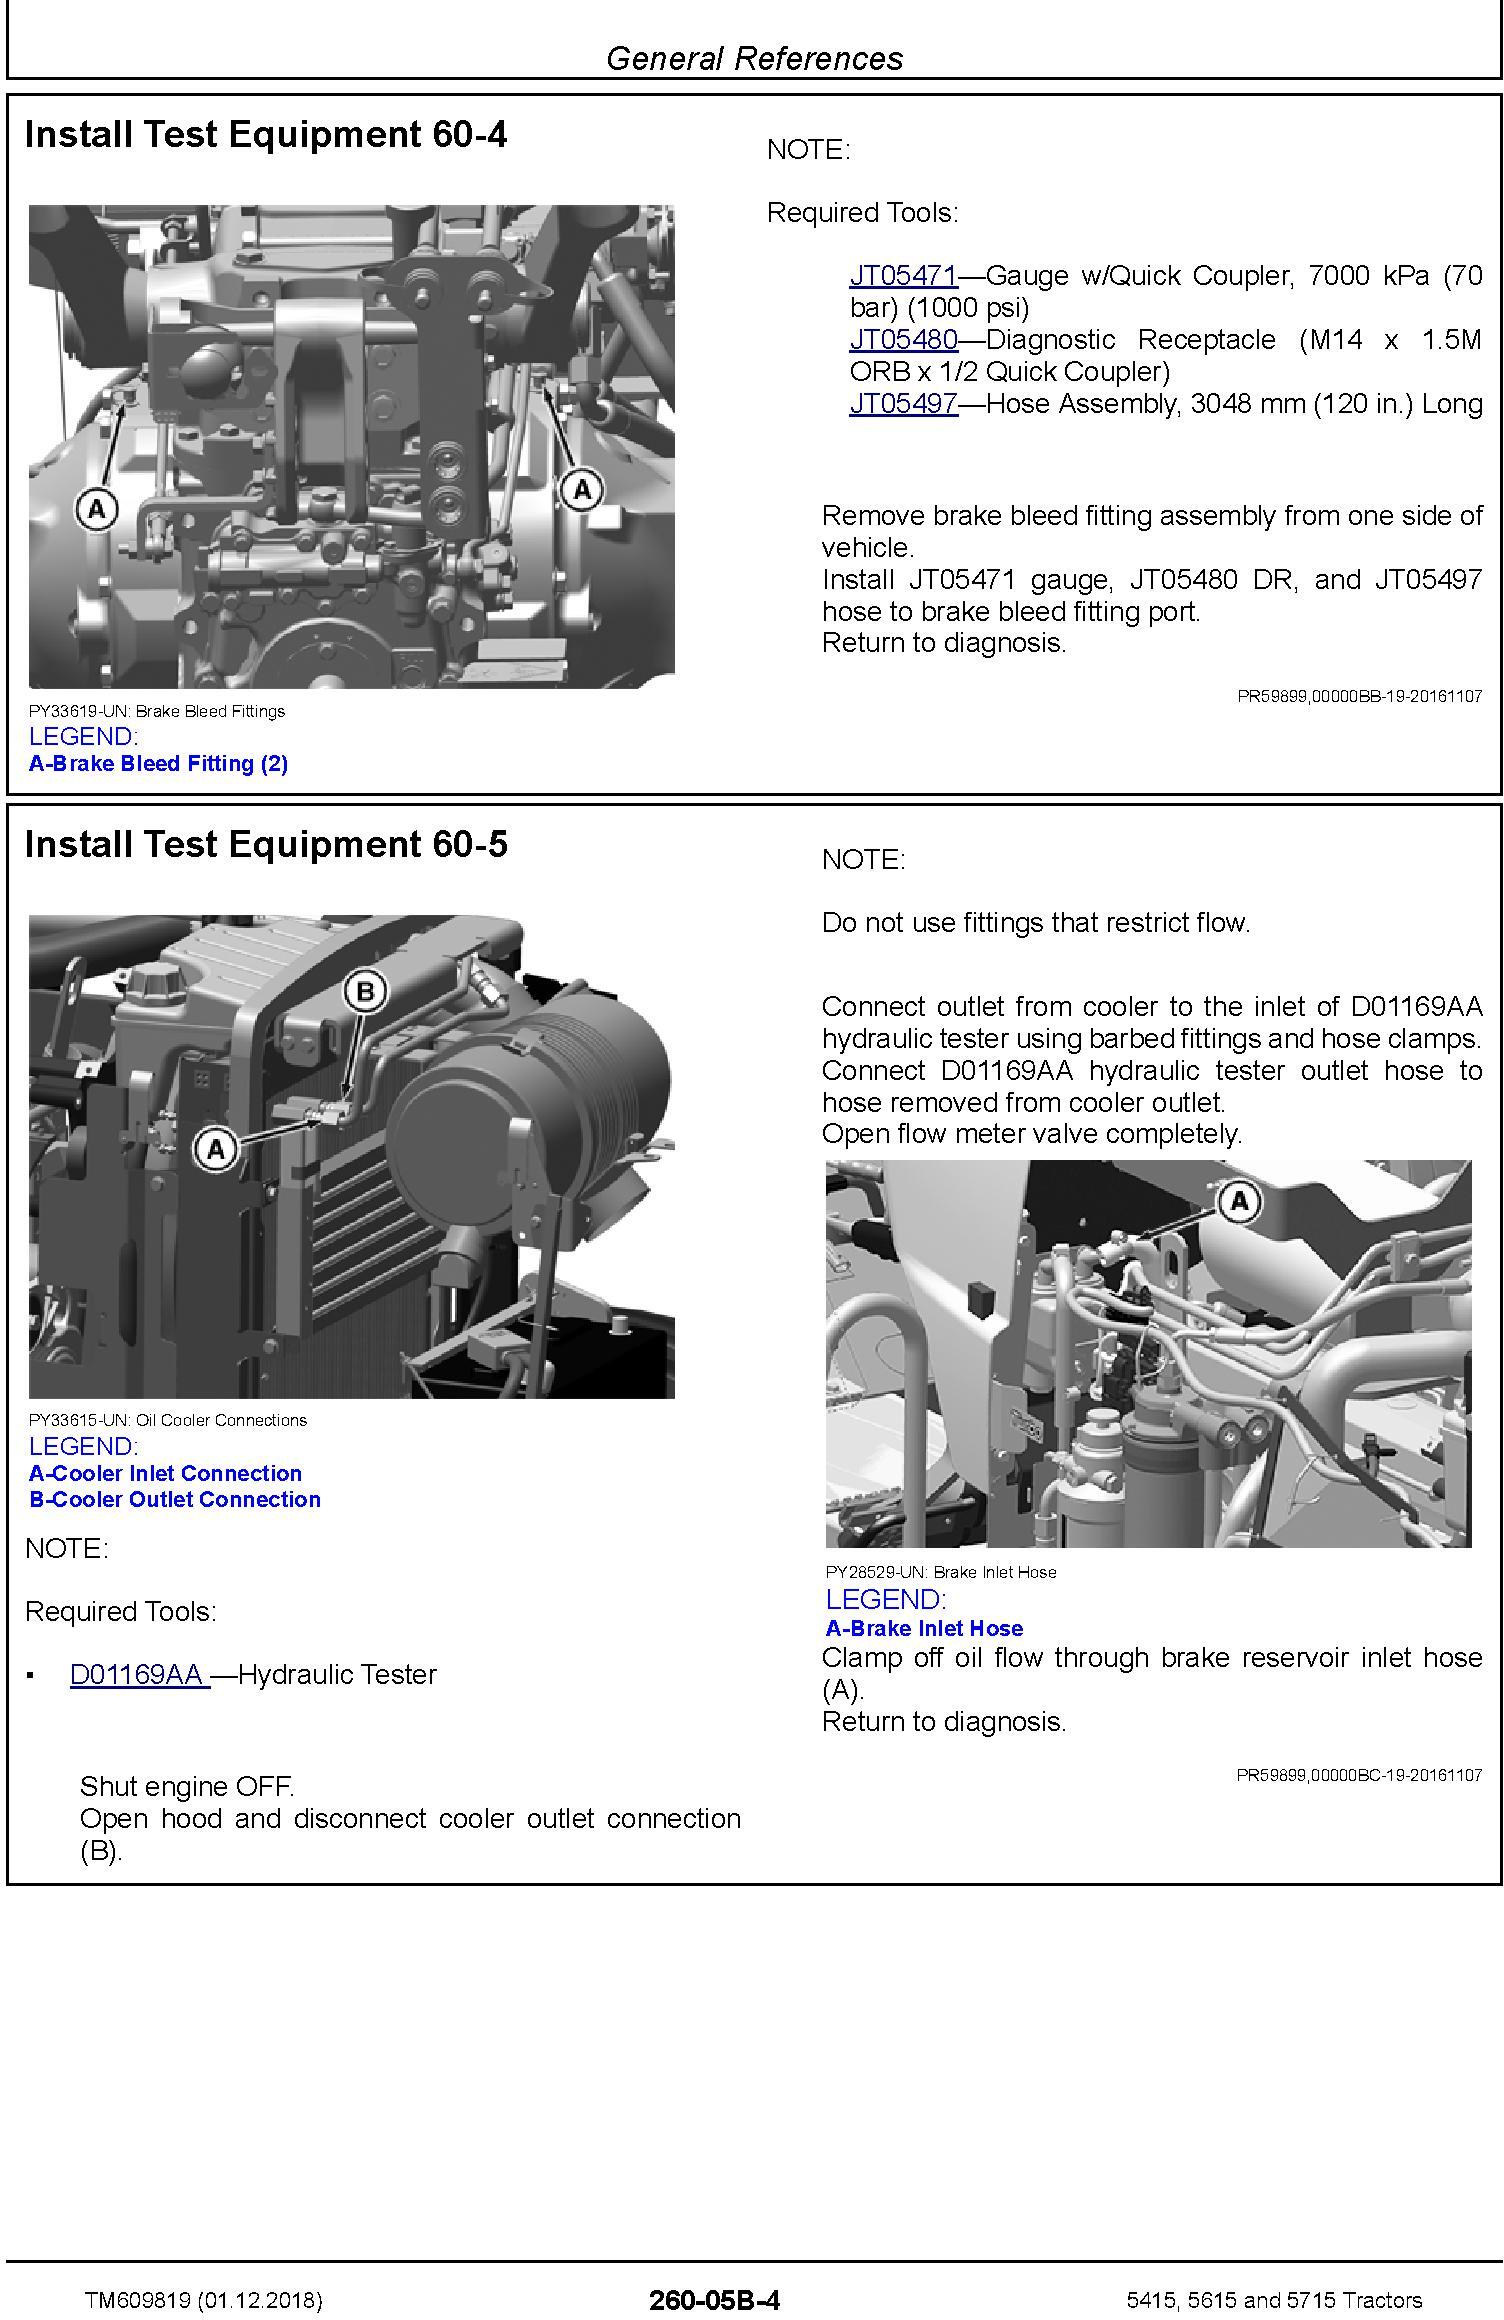 John Deere 5415, 5615 and 5715 Tractors Diagnostic Technical Service Manual (TM609819) - 3